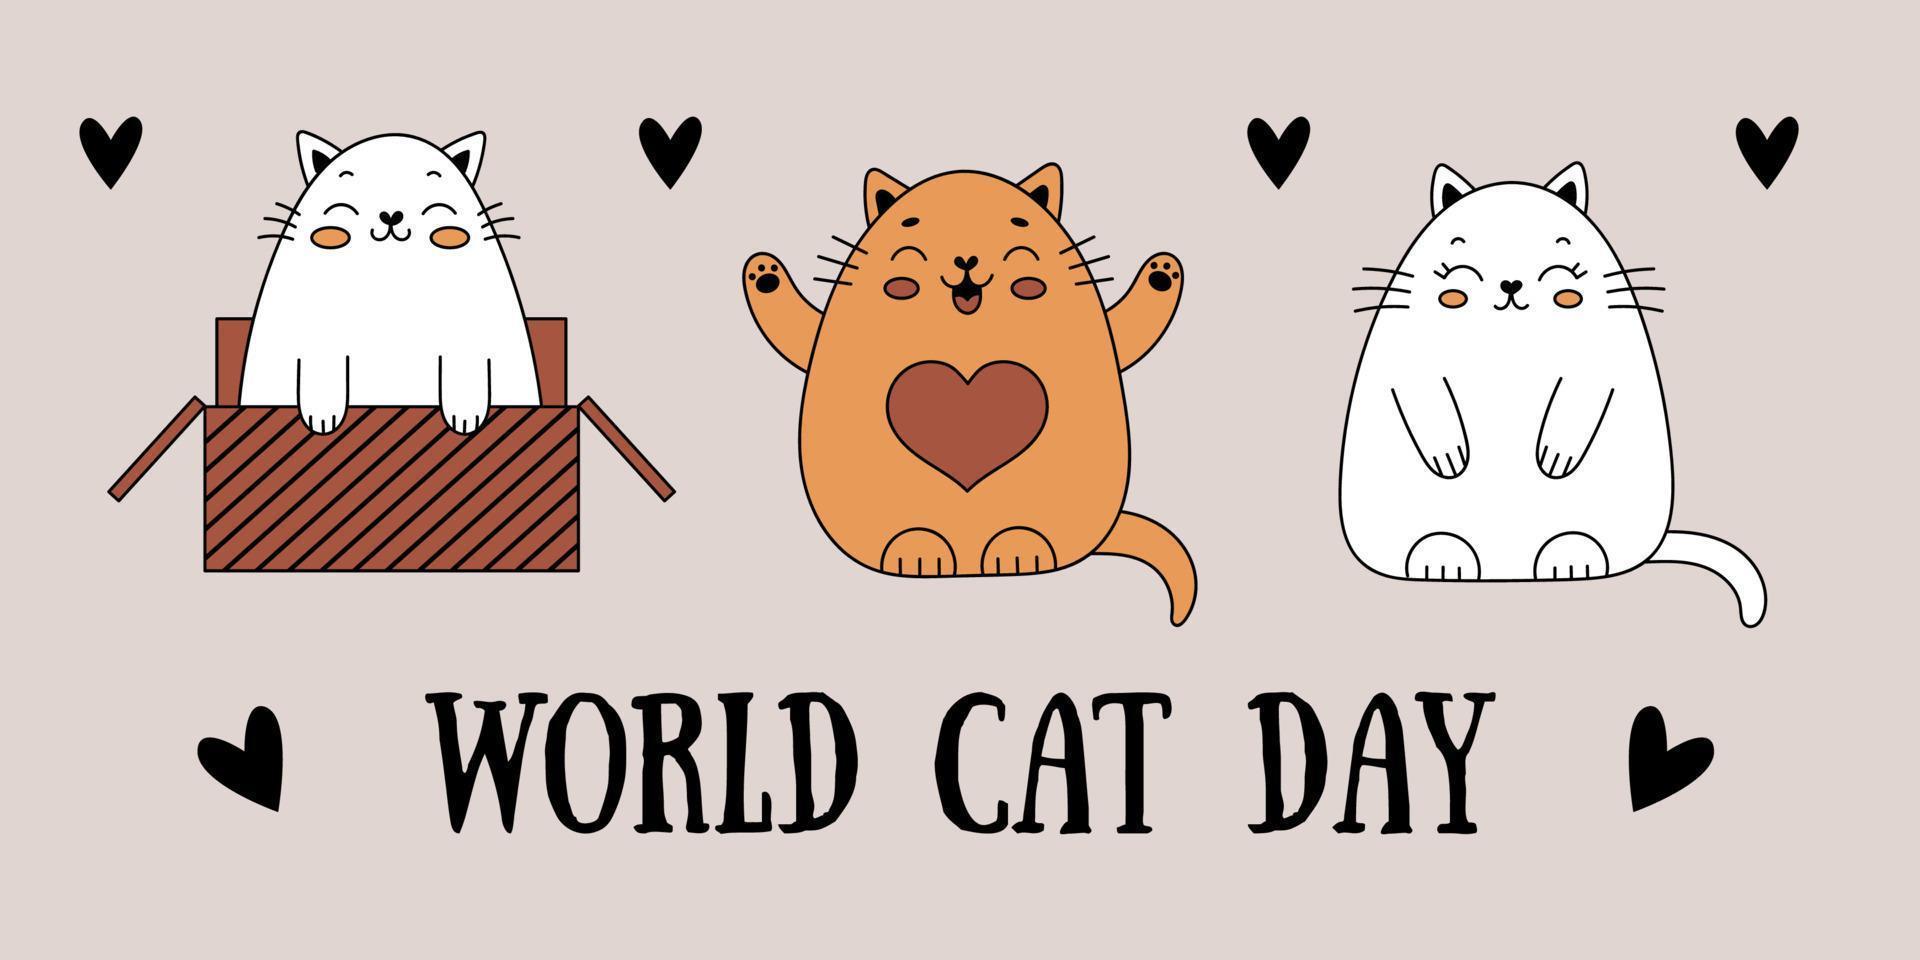 gatos doodle fofos. postal para o dia internacional dos gatos. gato alegre em uma caixa. ilustração vetorial com animais de estimação. vetor